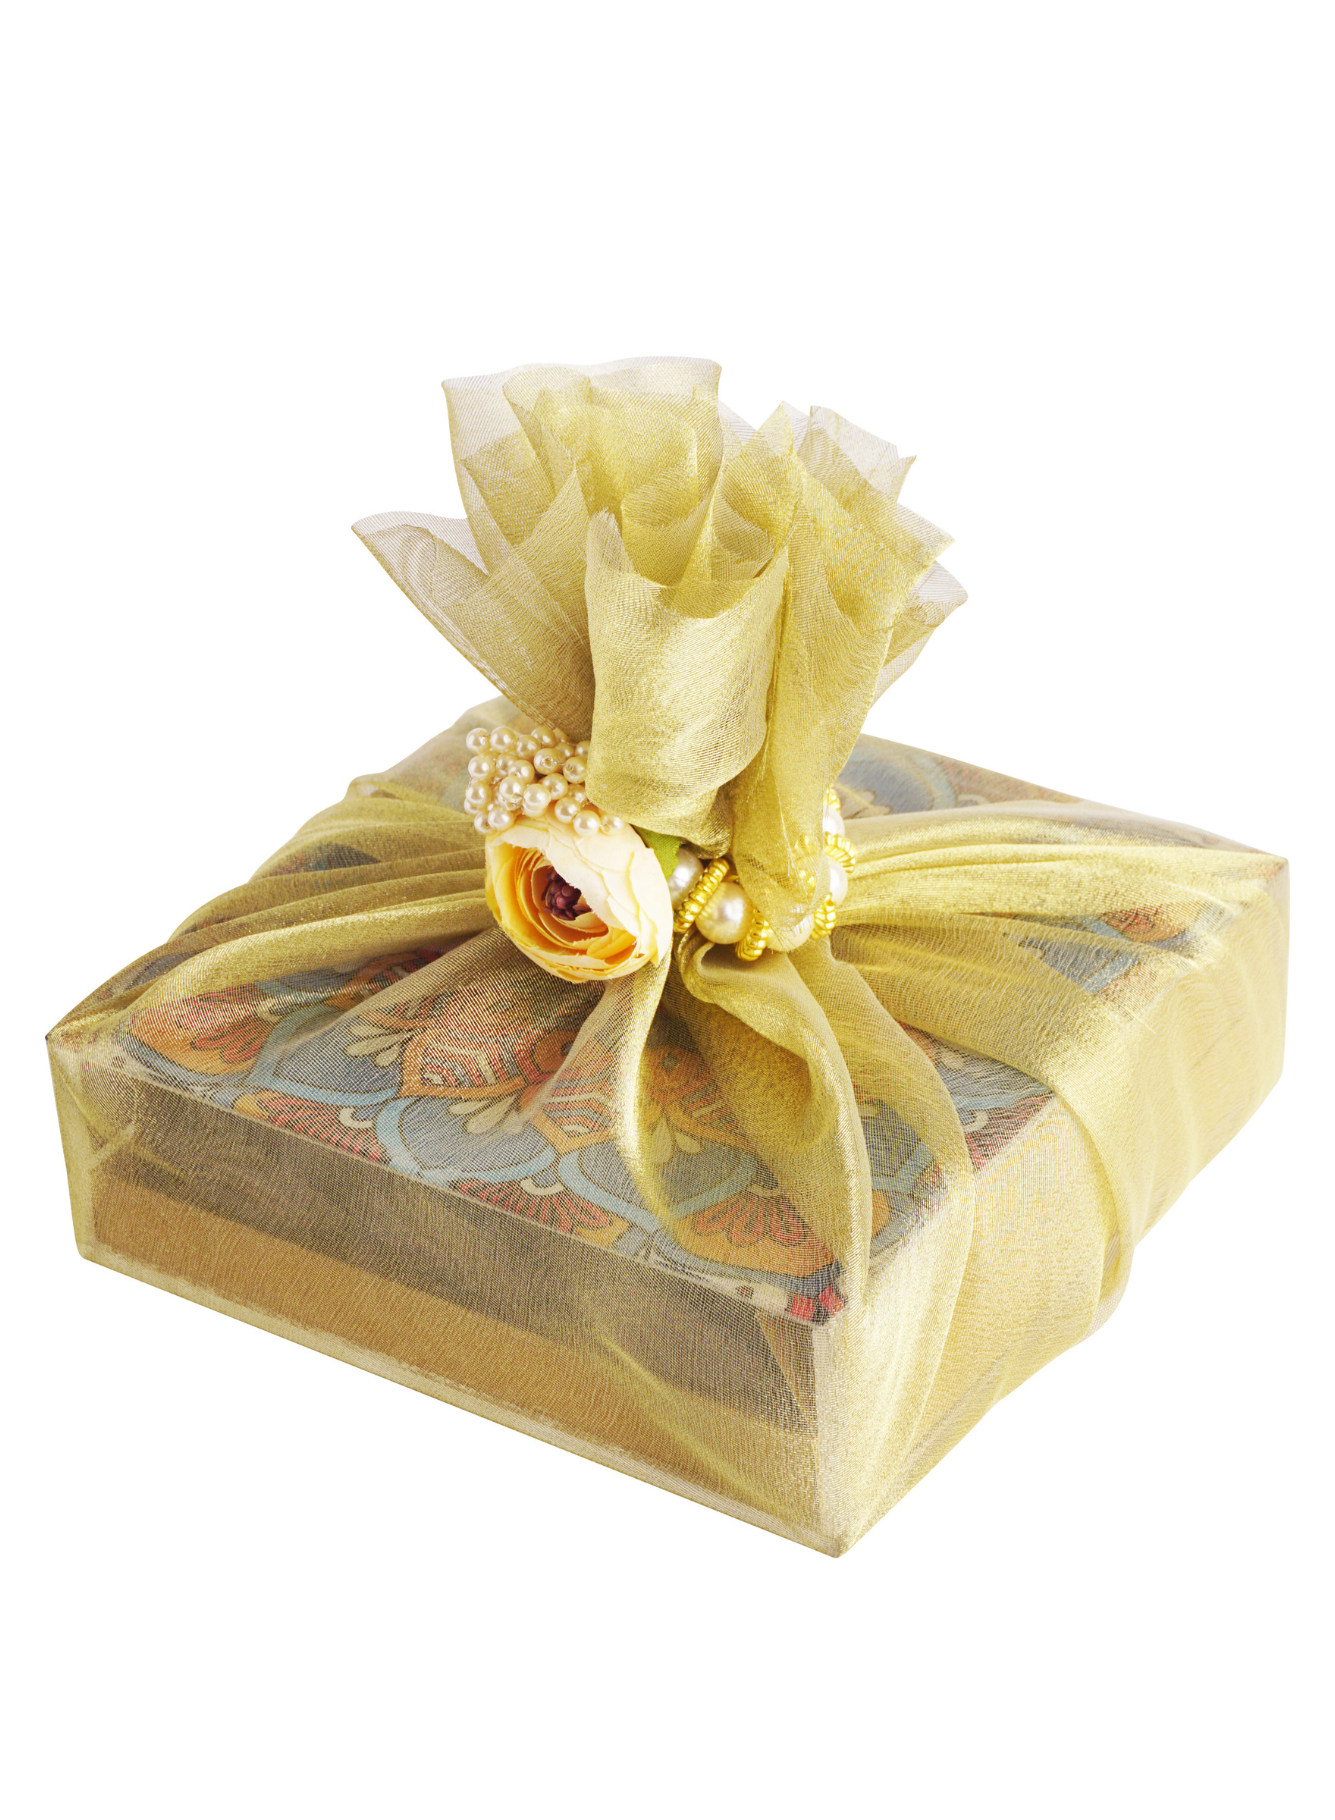 Safawi Dates with Mandala Acrylic Box